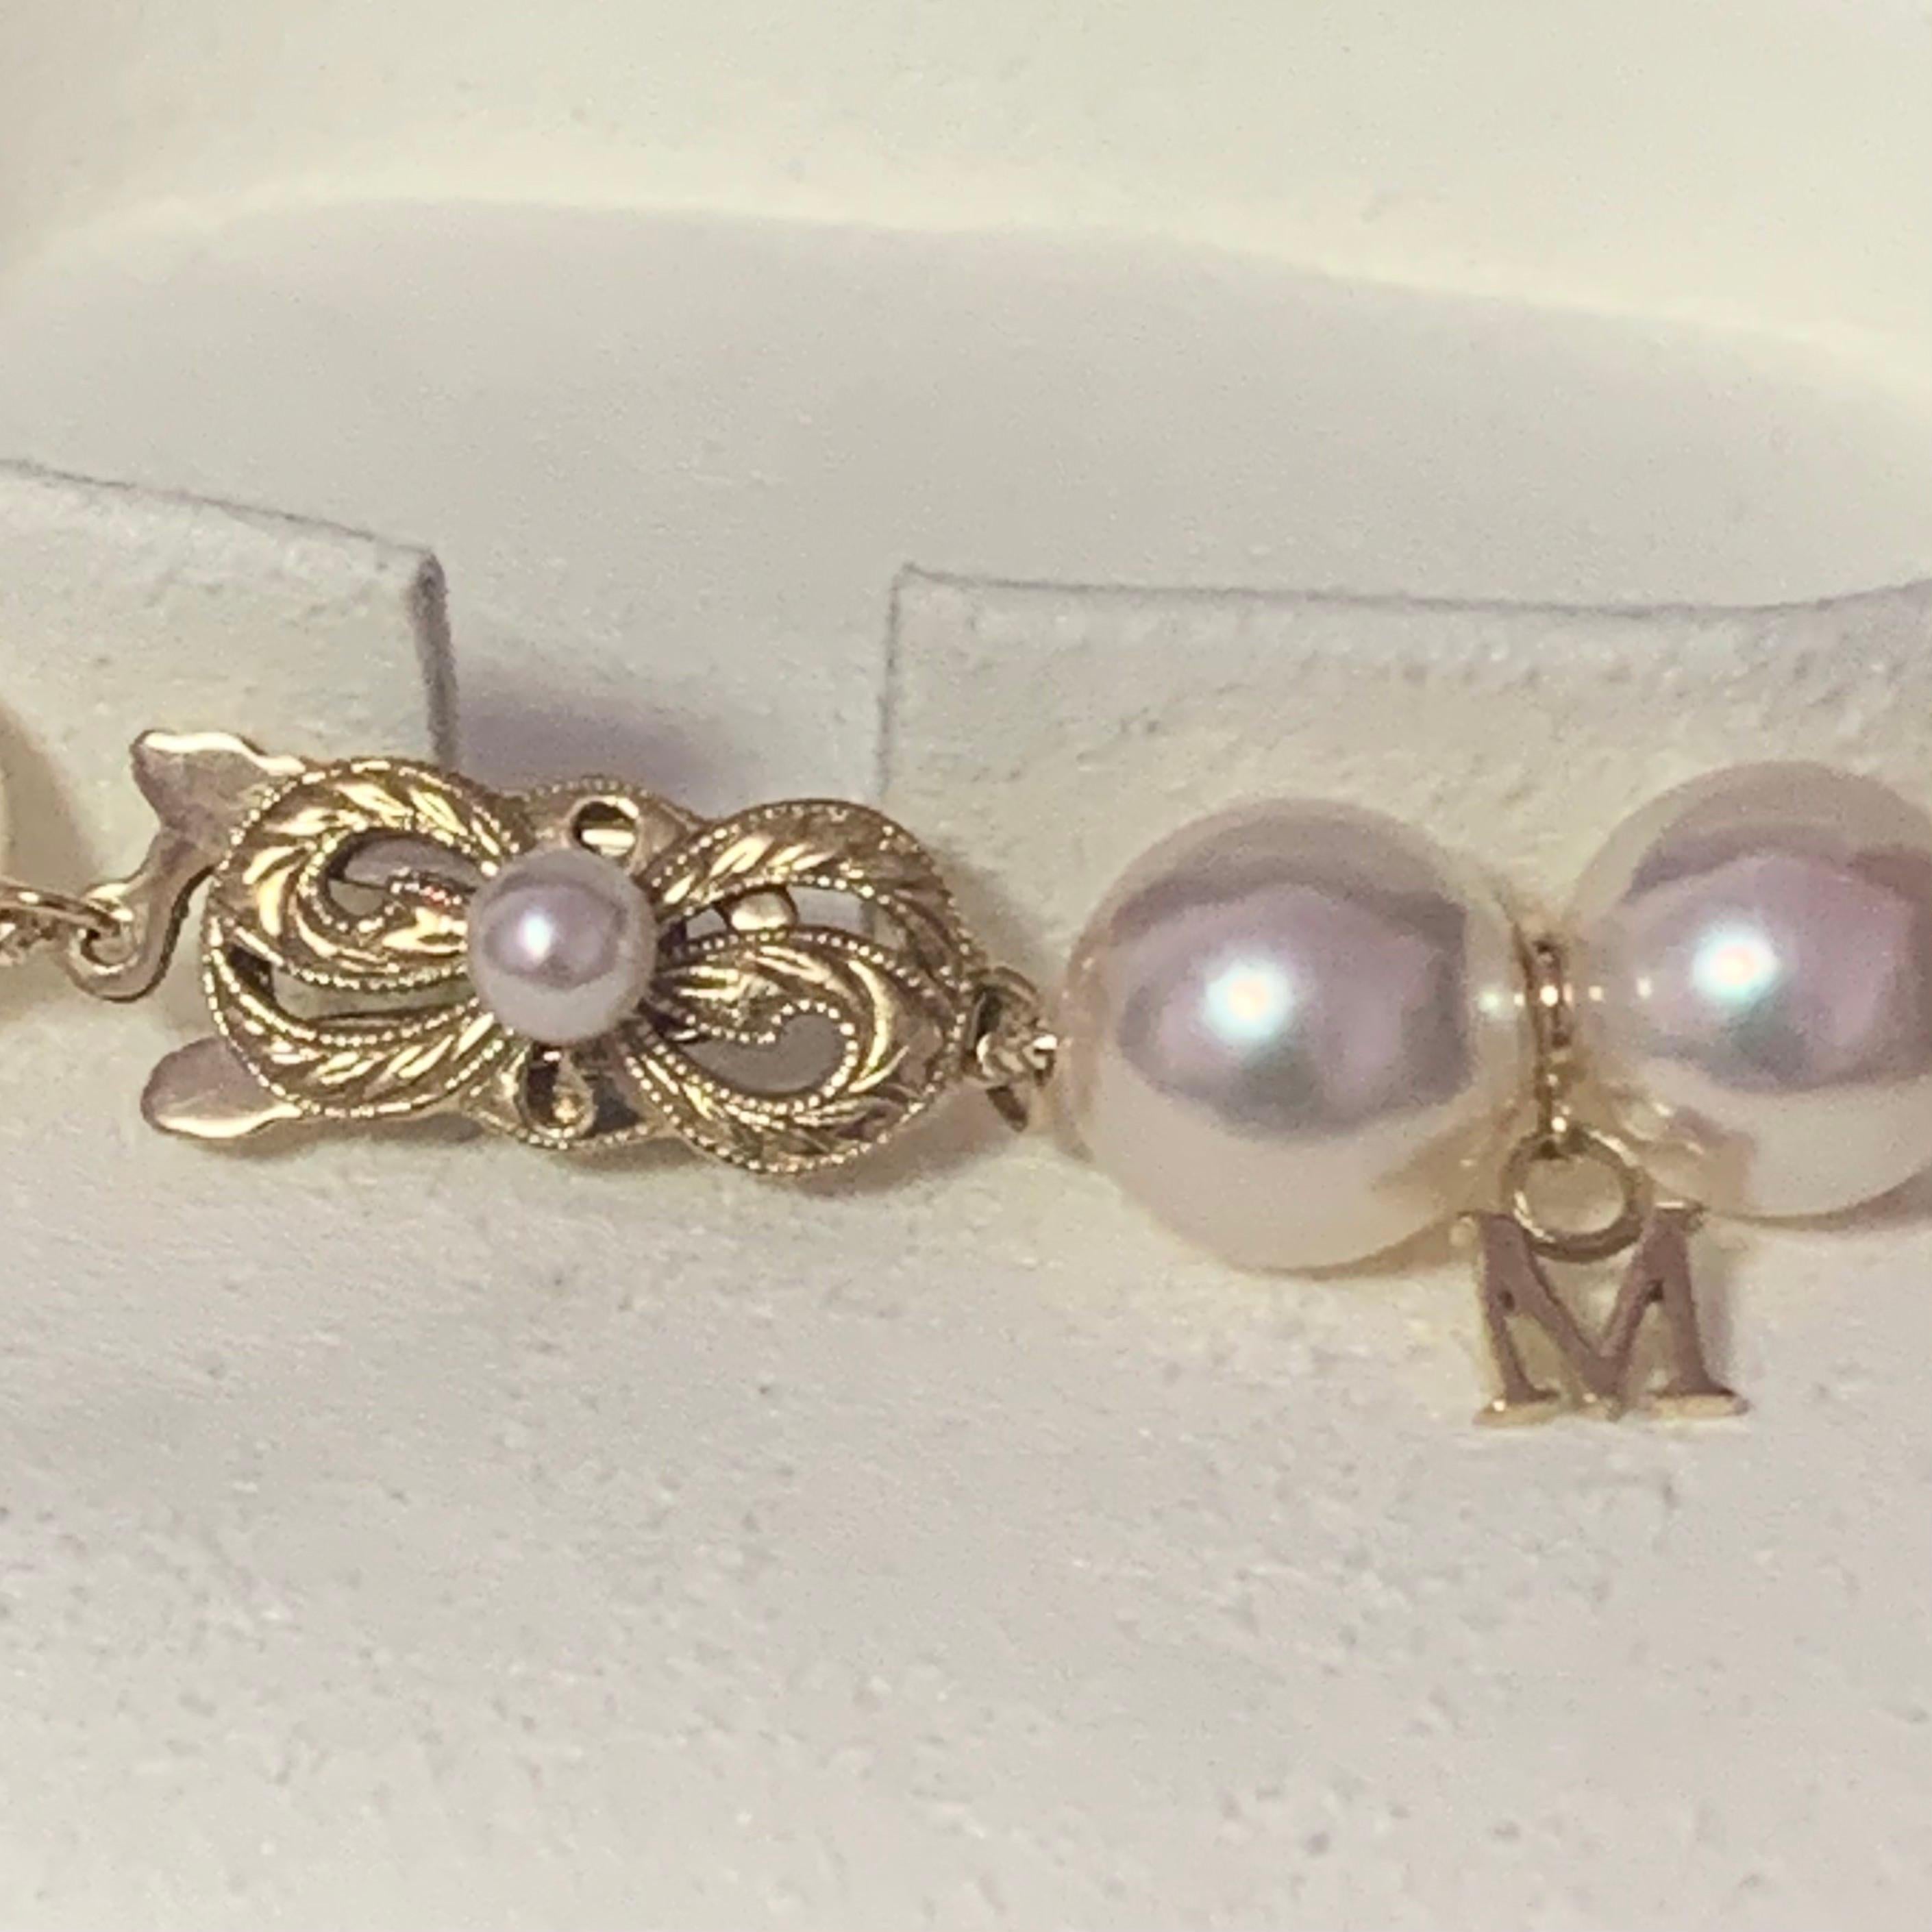 mikimoto pearl bracelet value